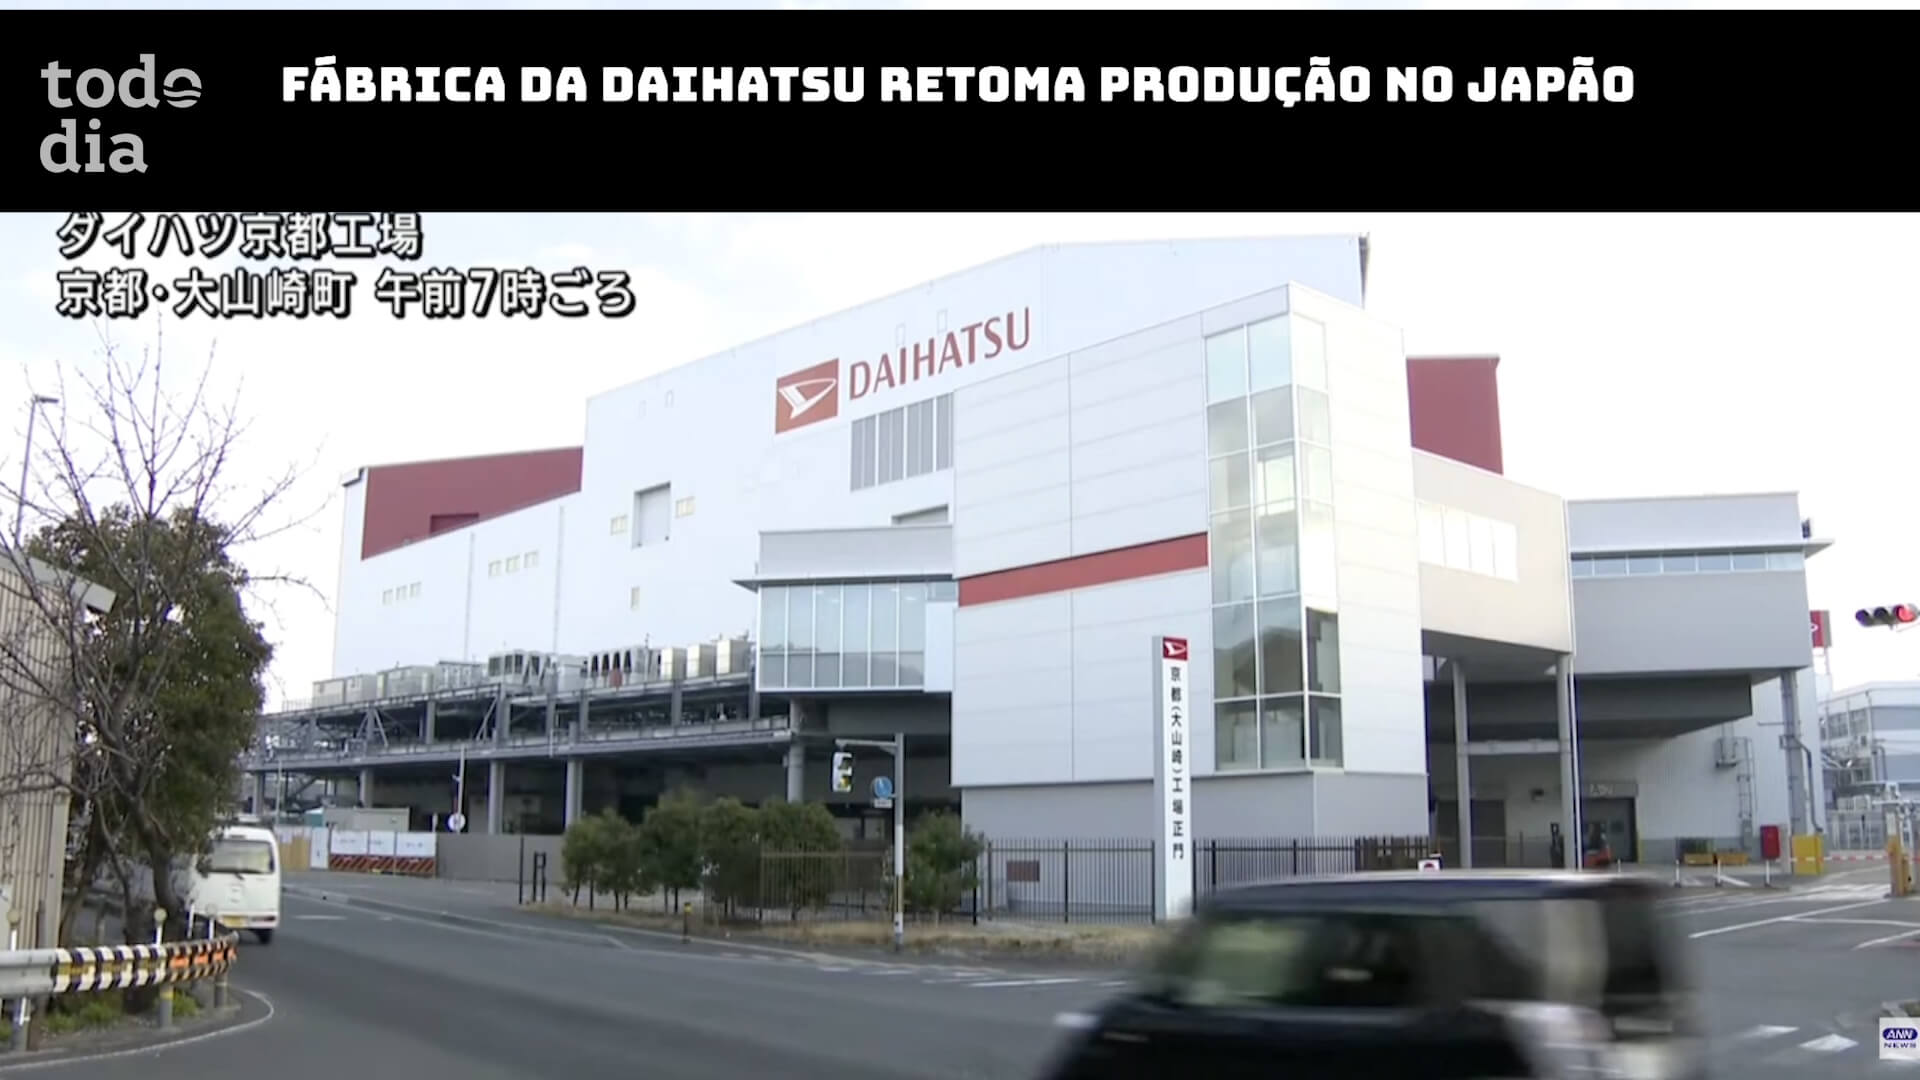 Fábrica da Daihatsu retoma produção no Japão 